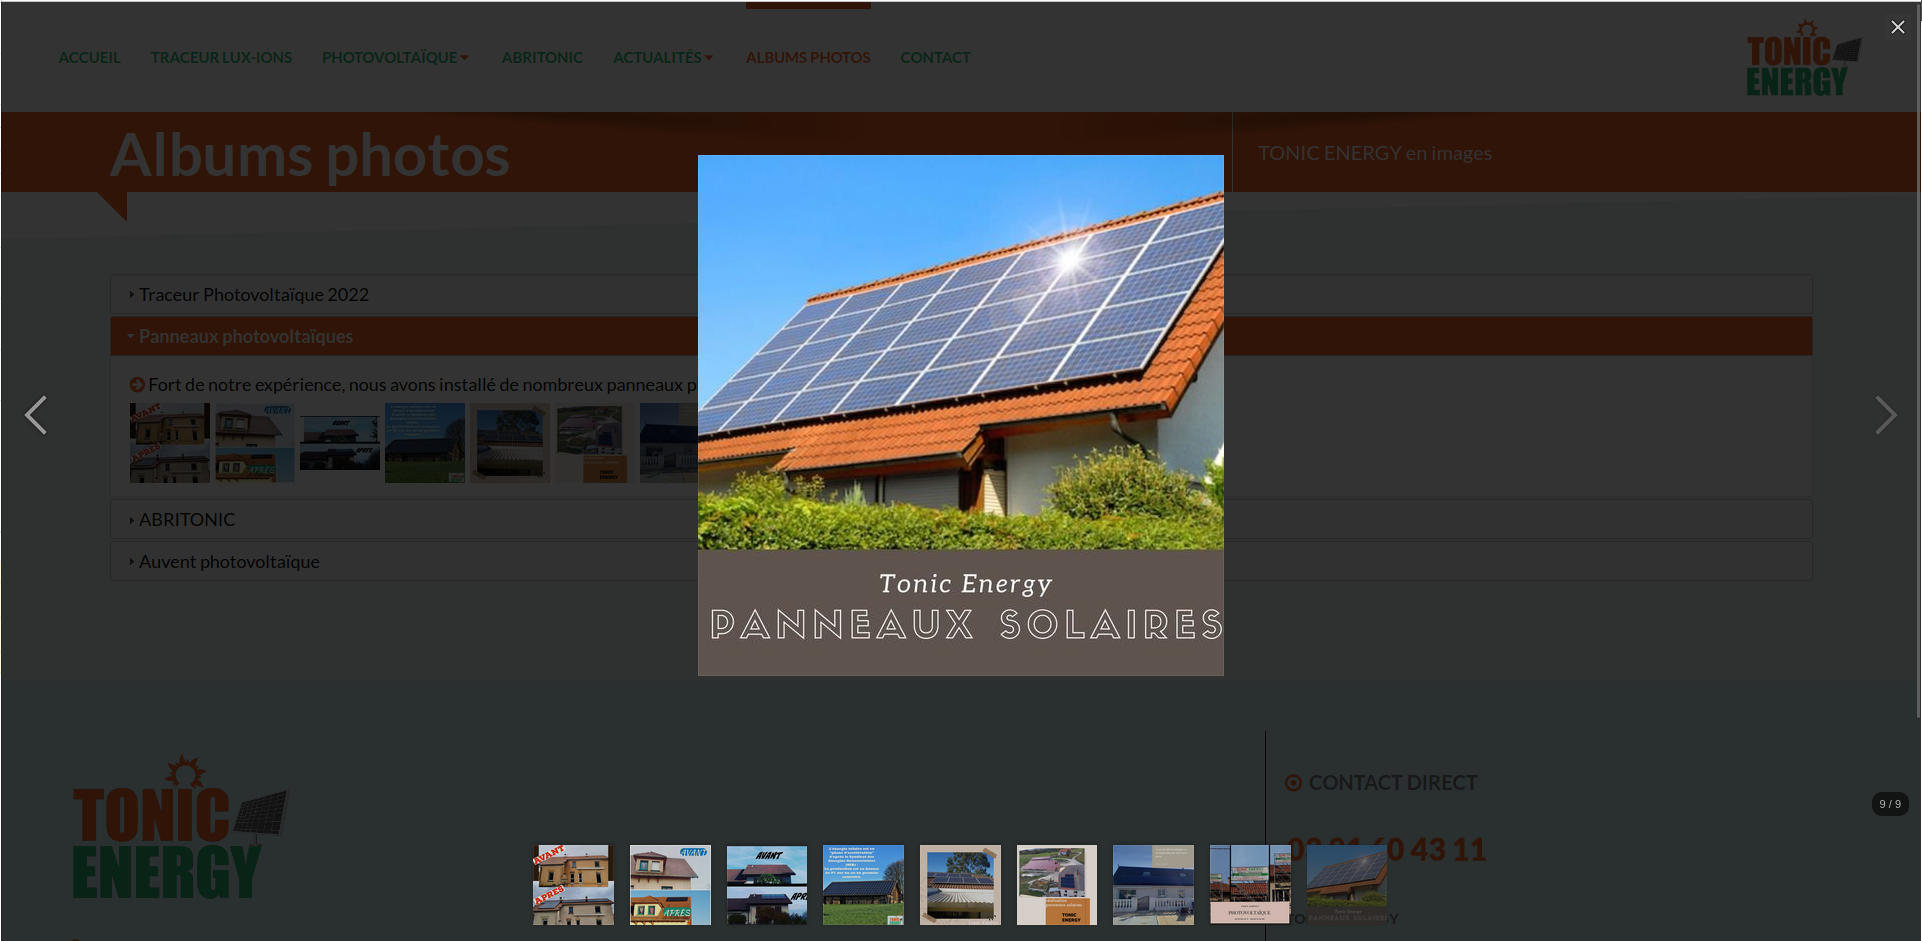 Concepteur et fournisseur de panneaux solaires<br>Présentation des résiliation classées dans des albums photos